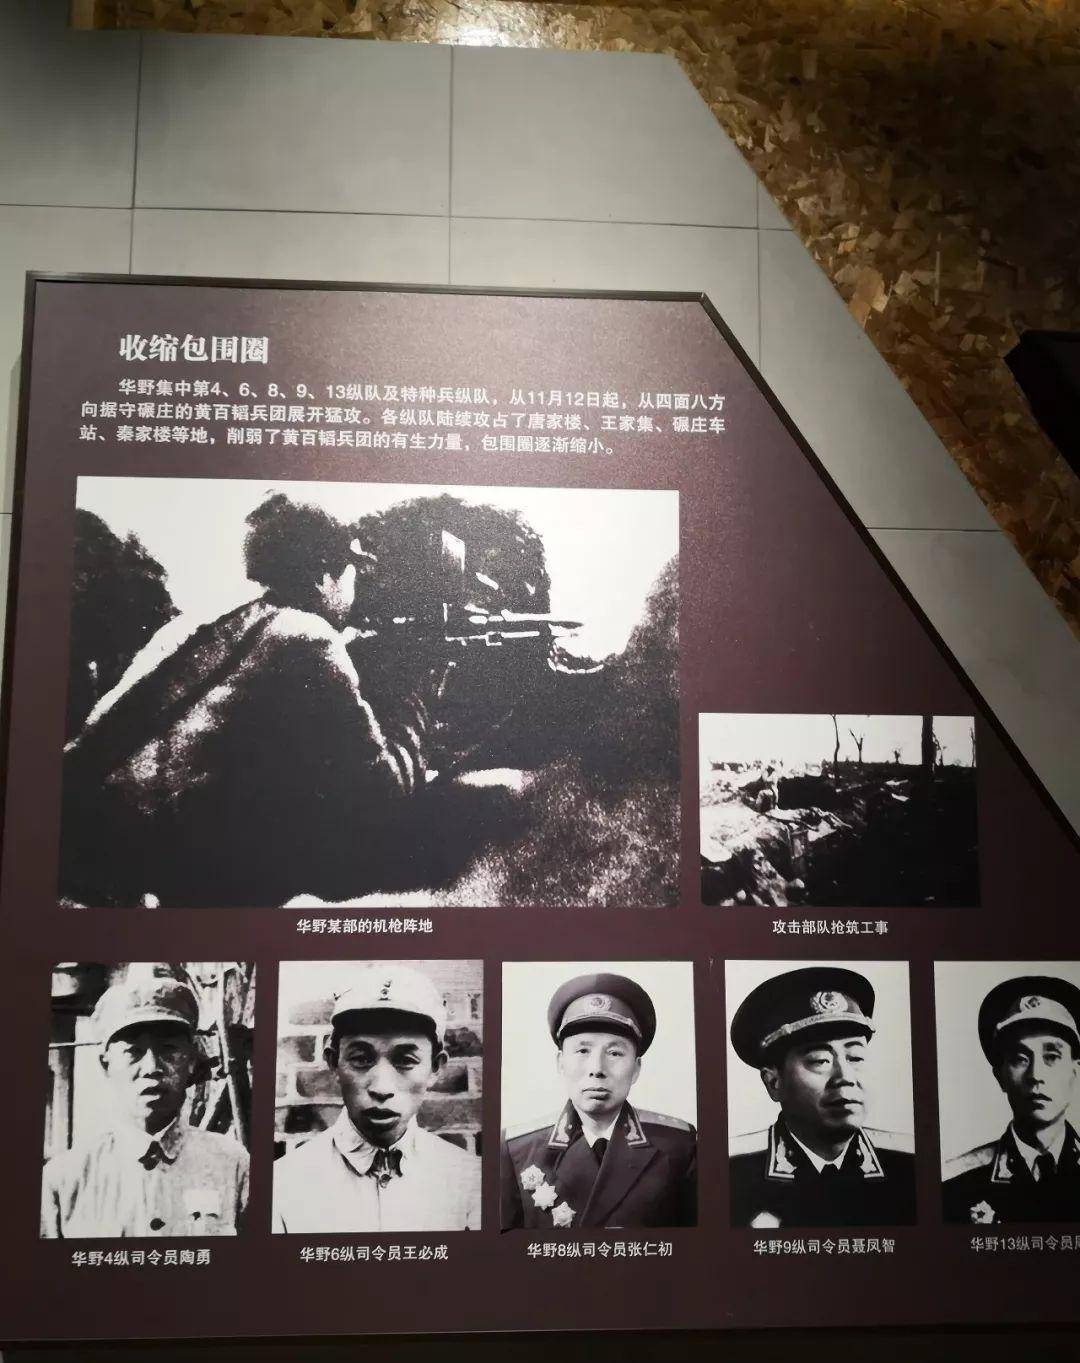 台湾军史谈碾庄战役图片